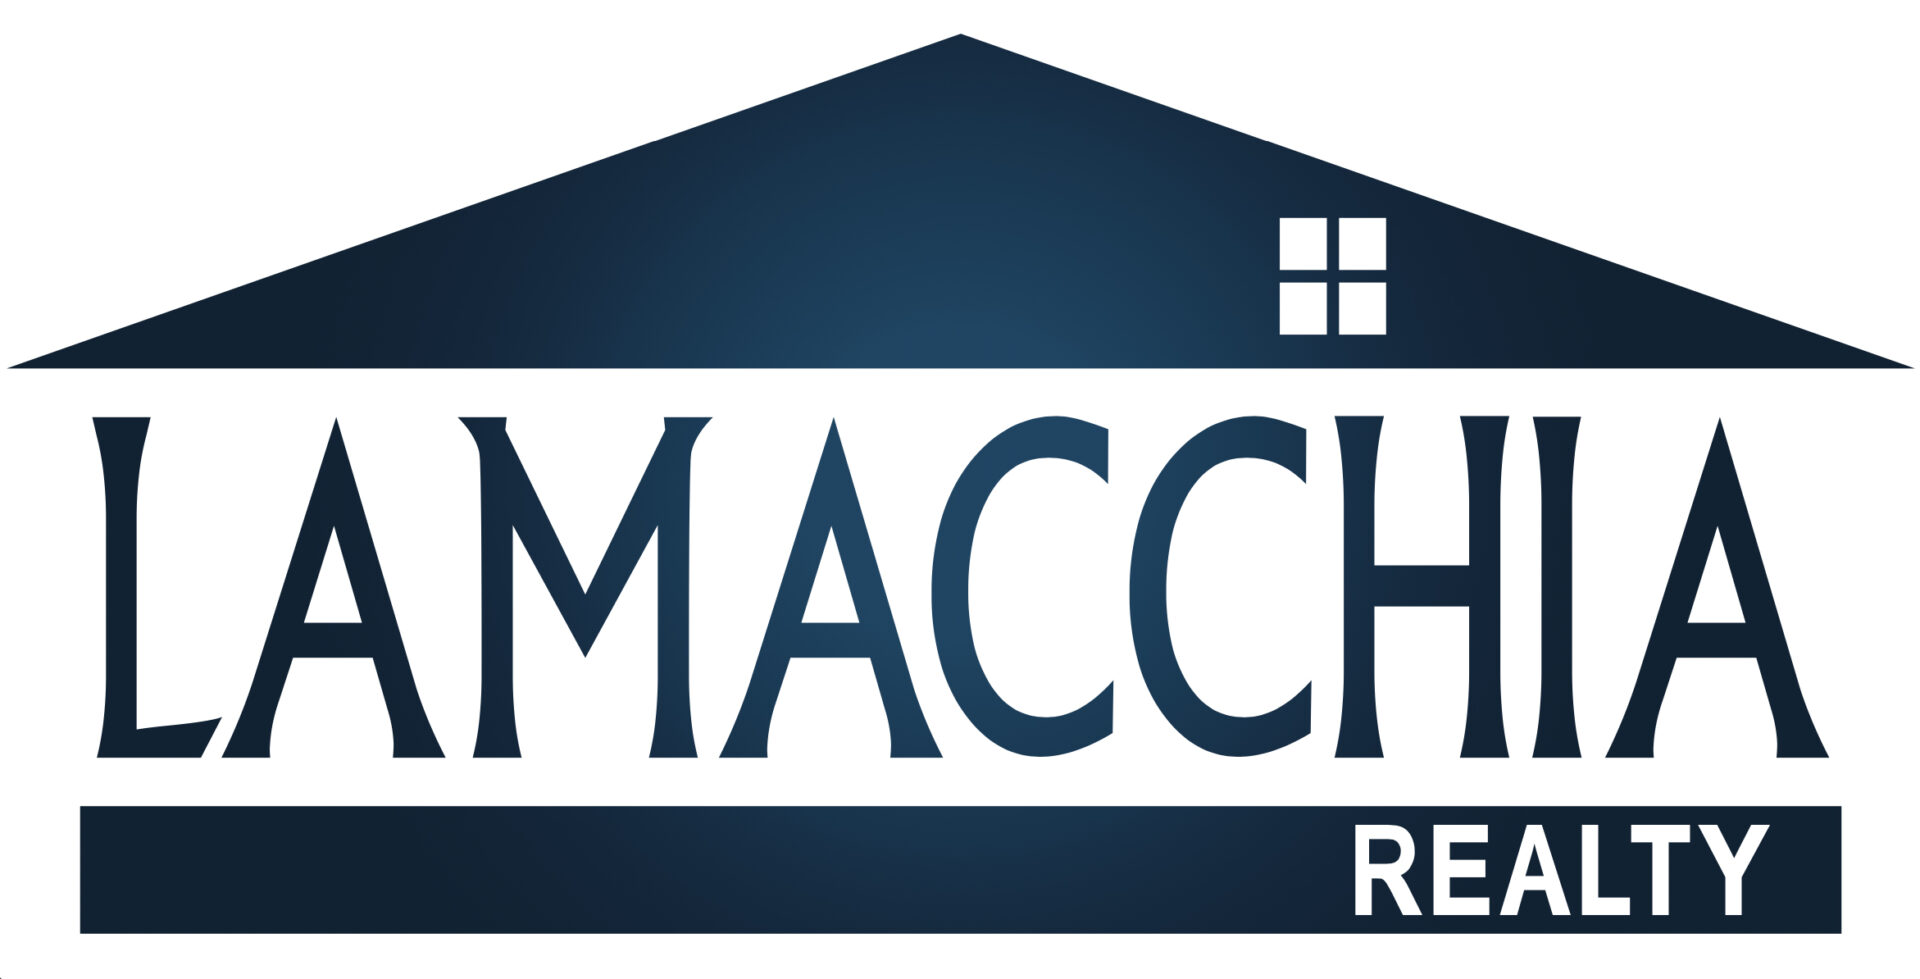 Lamacchia Realty Logo